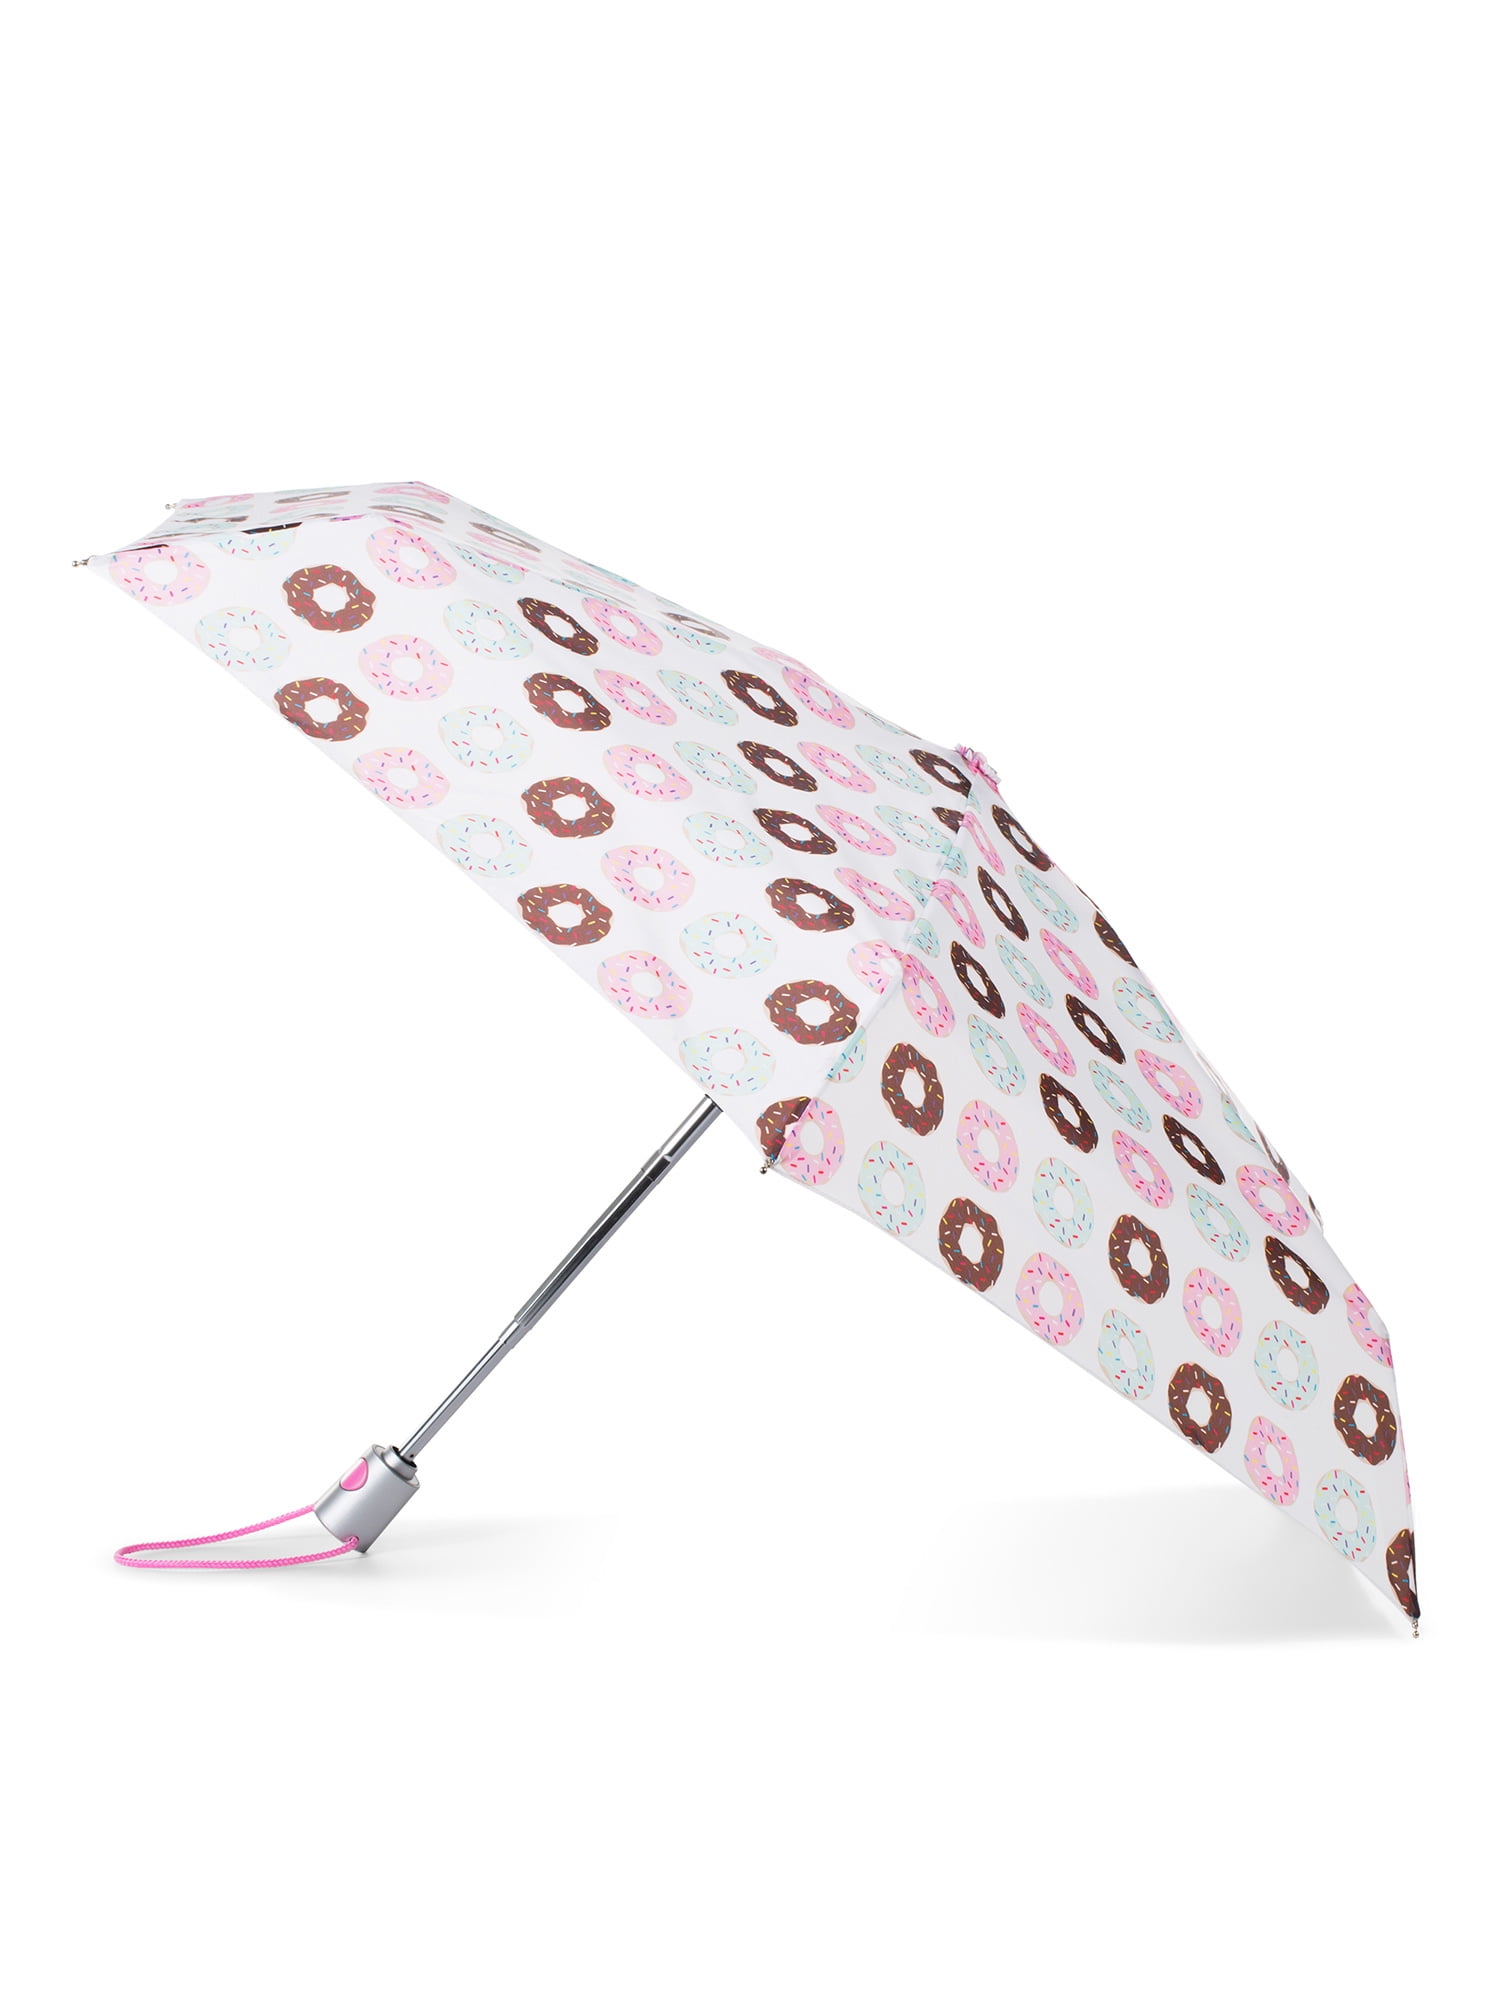 Art Paper Umbrella Rain Women Automatic Mi Clear Umbrella Paper Parasol Foldable Small Pocket,Black Manual 1